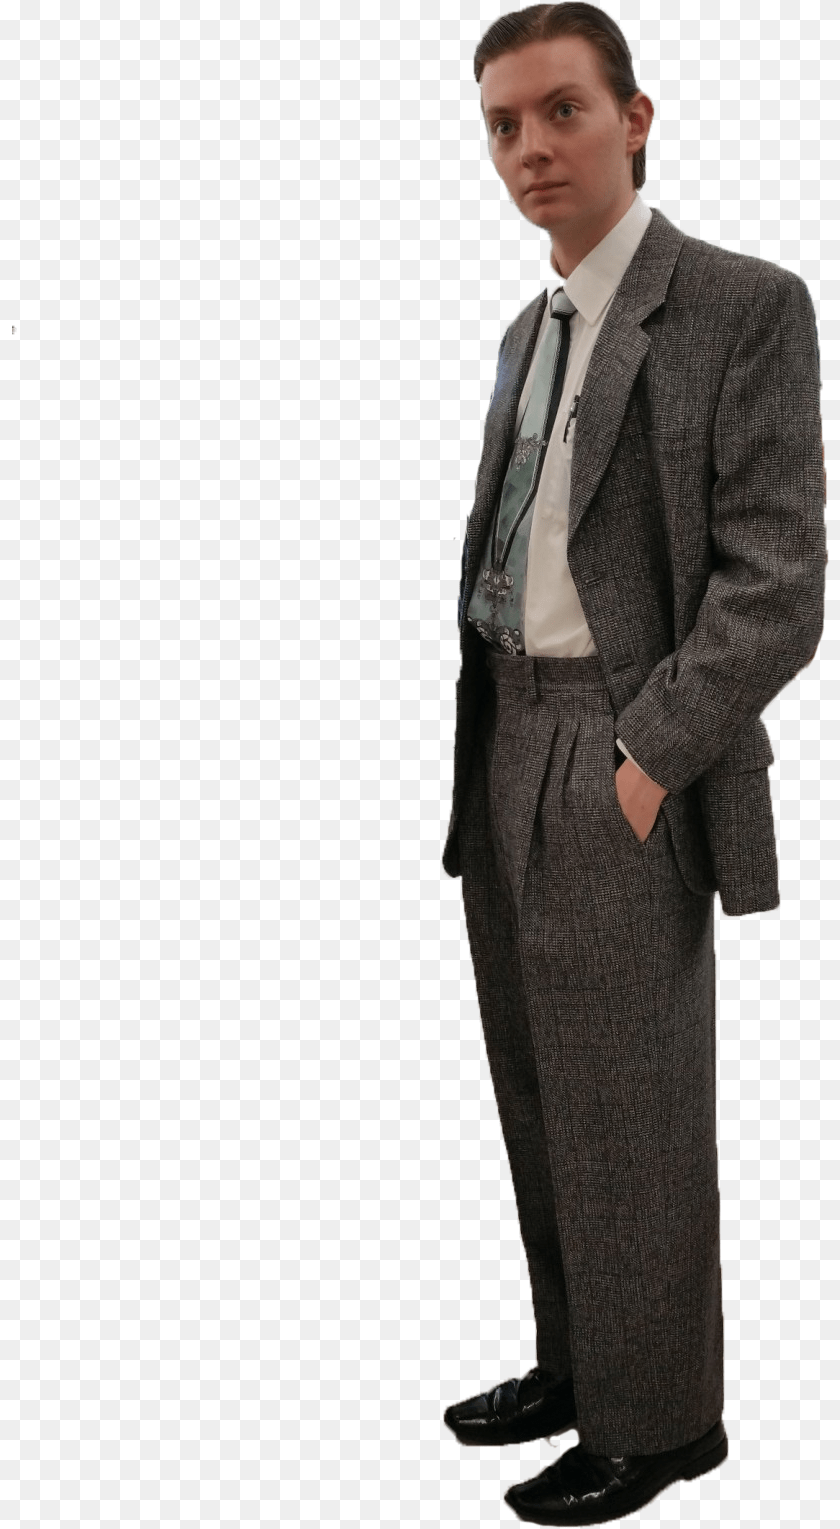 819x1529 Tuxedo, Accessories, Tie, Suit, Jacket Transparent PNG